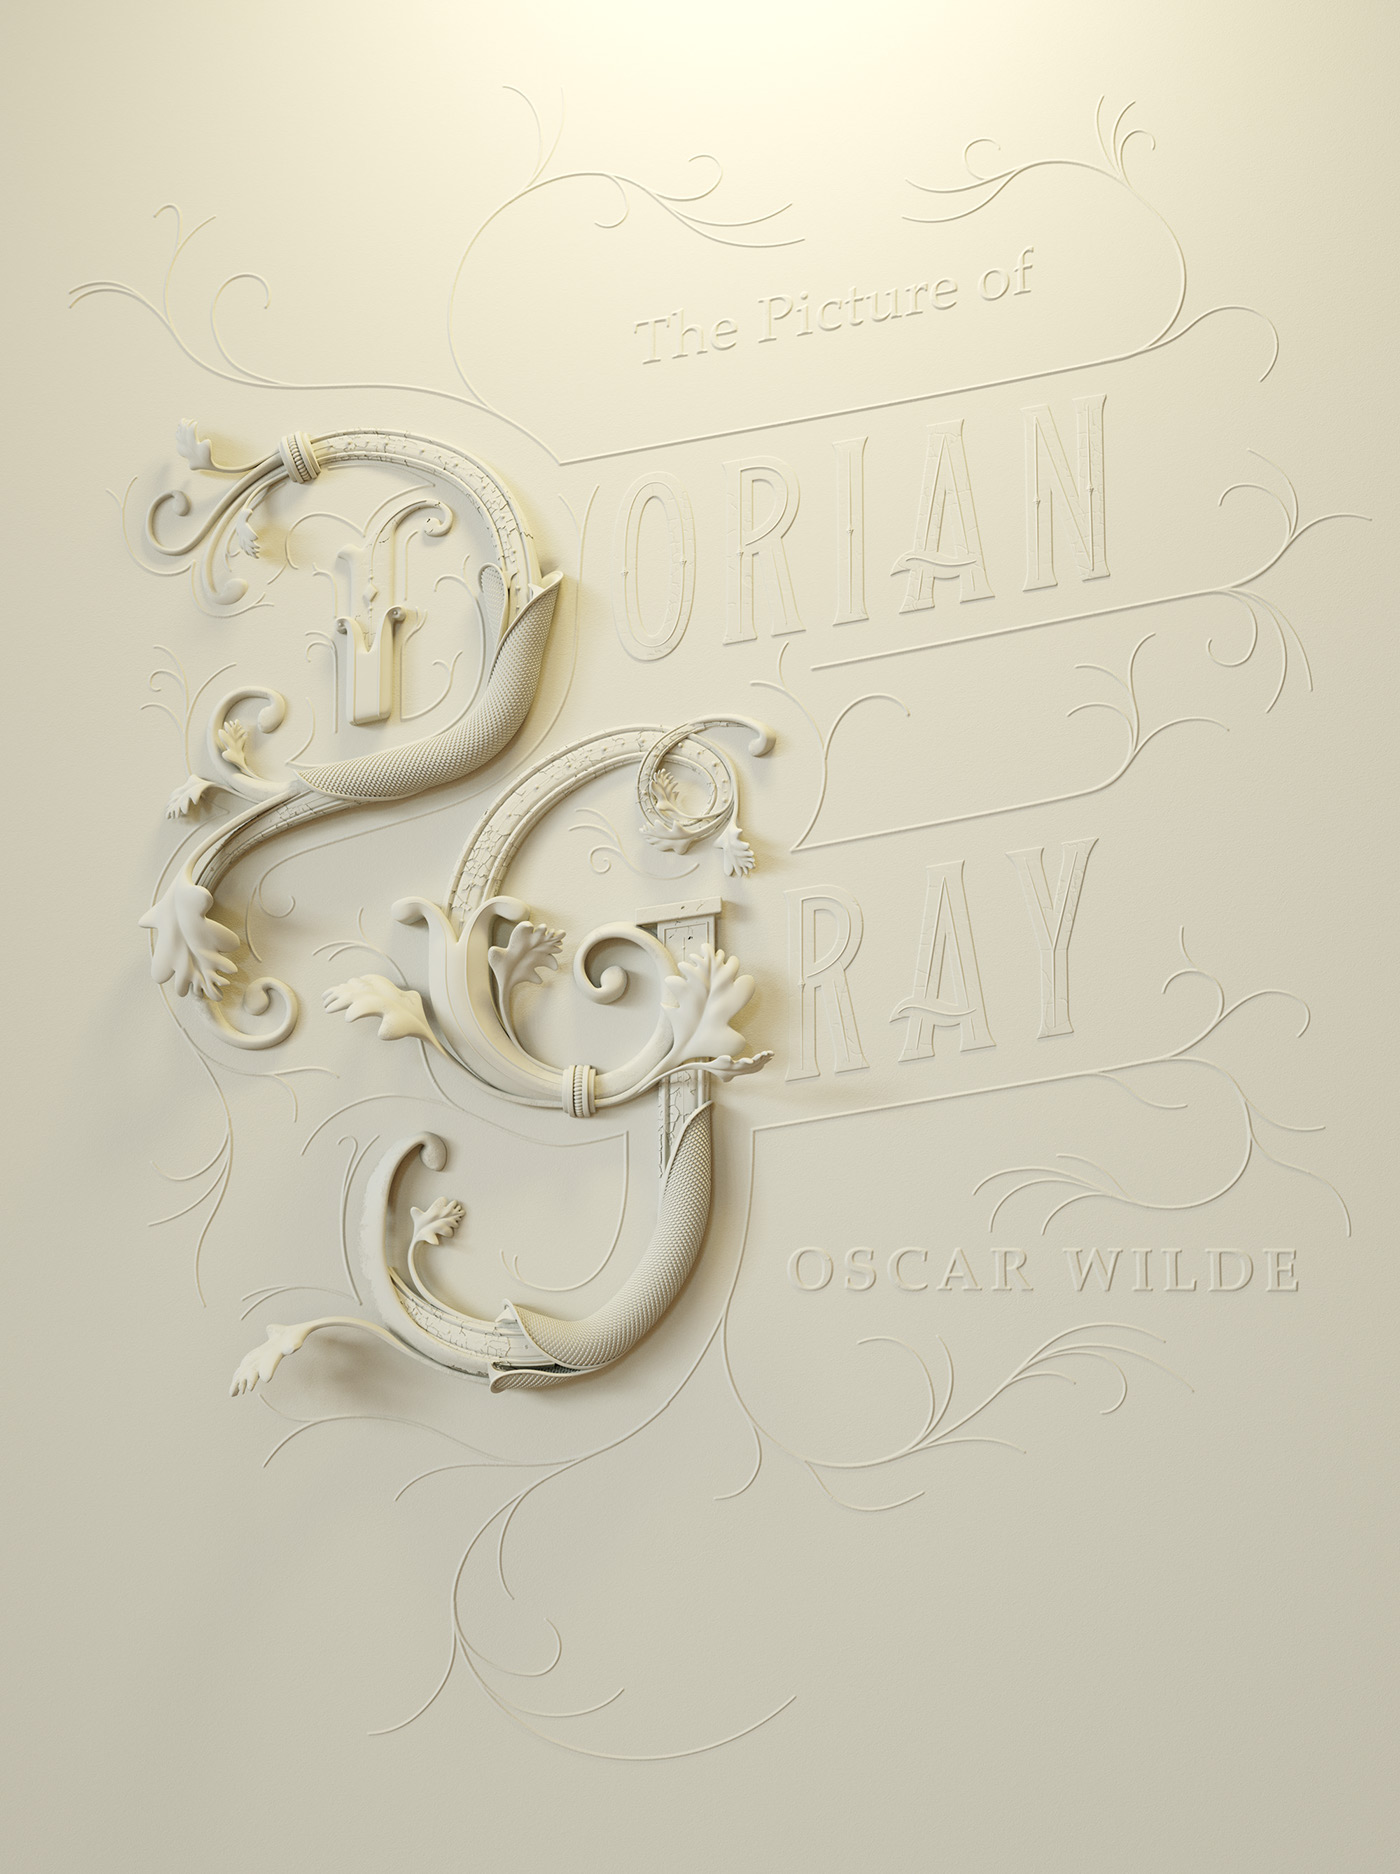 Picture Dorian gray oscar wilde book CGI cover ornament gold